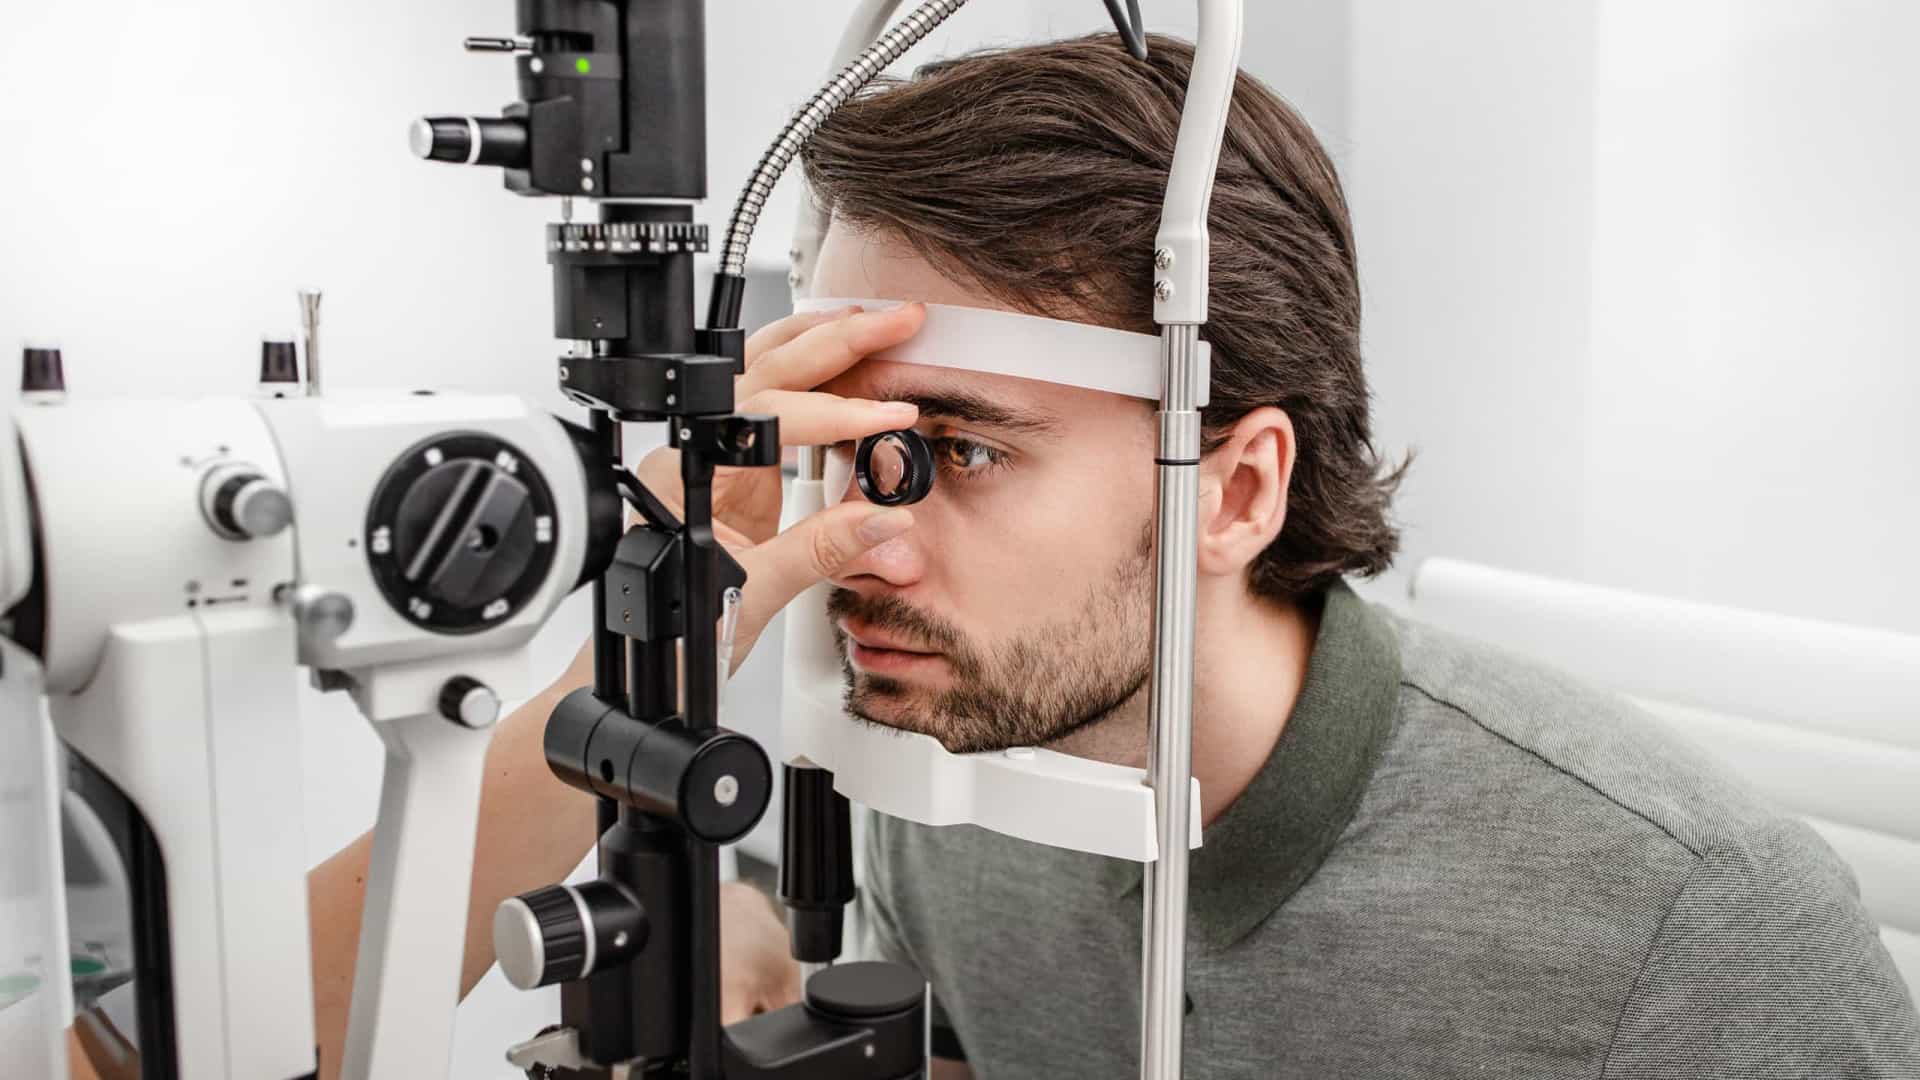 Um quarto dos brasileiros não vai ao oftalmologista, indica pesquisa